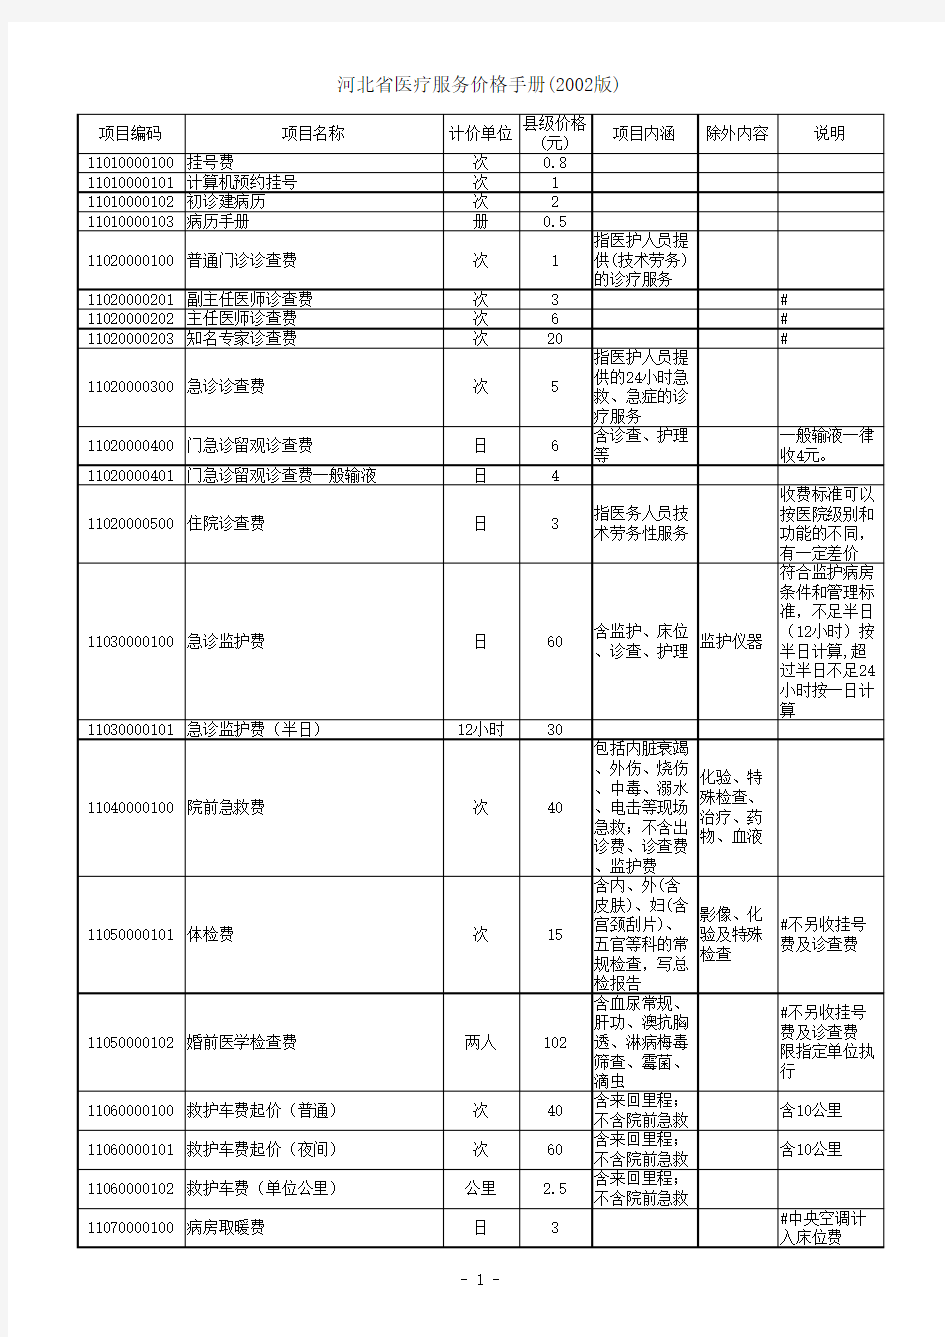 河北省医疗服务价格手册(2002版)